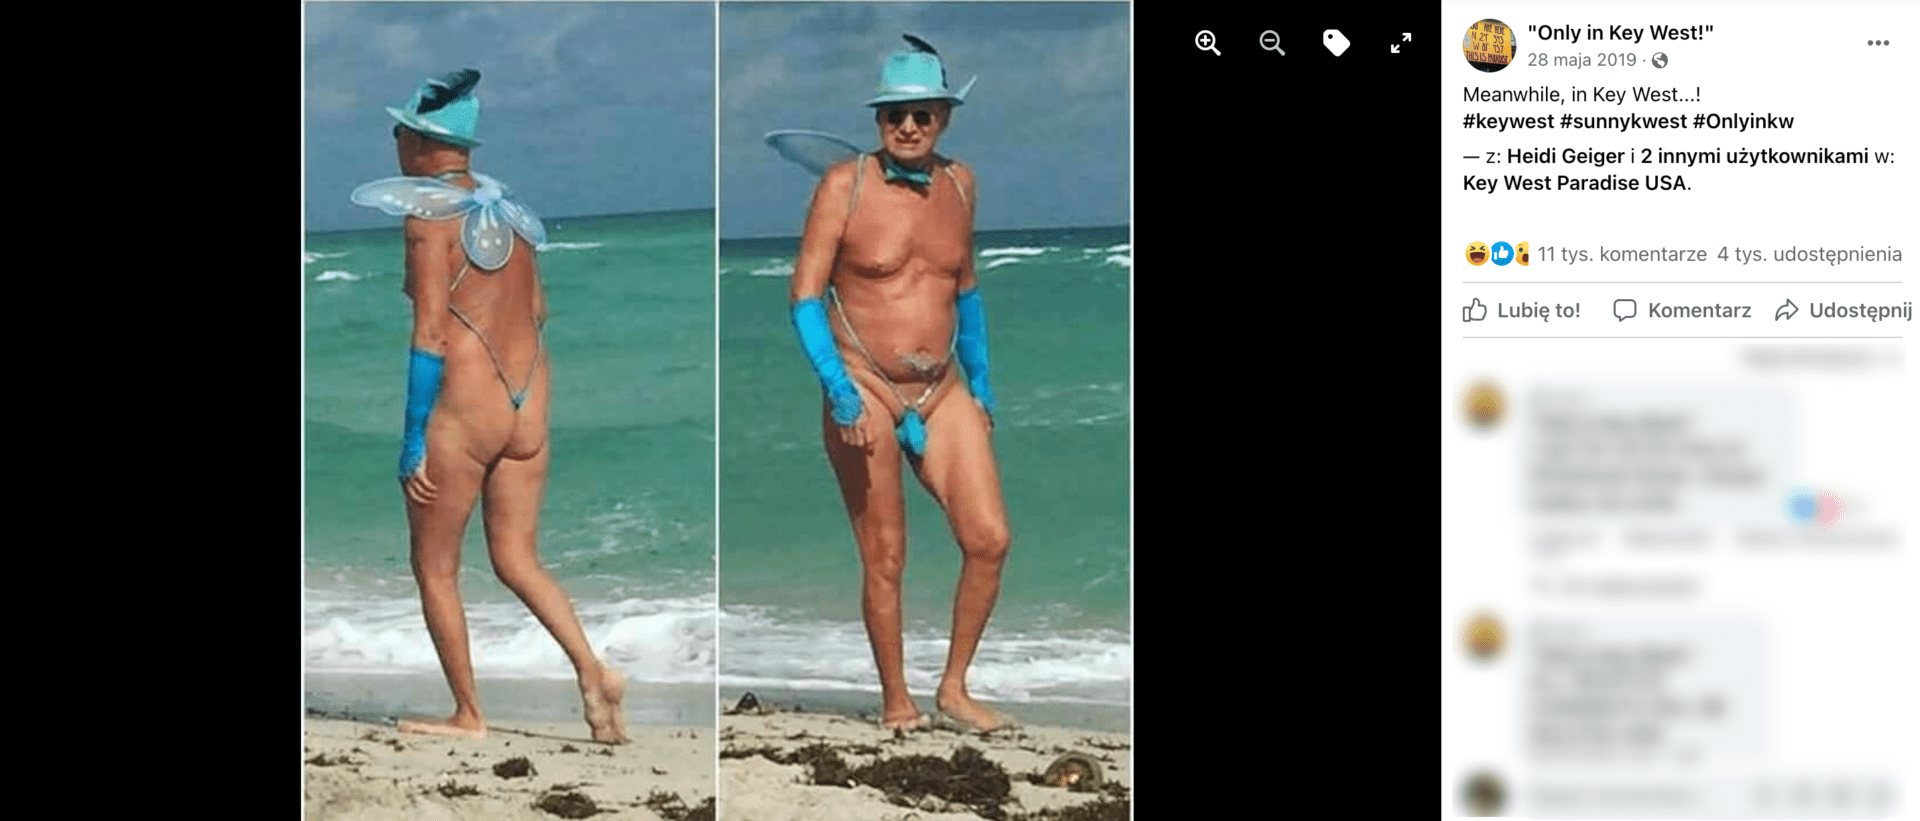 Zrzut ekranu z posta na Facebooku, w którym udostępniono zdjęcia Maxa Schwaba. Widoczny jest na nim mężczyzna na plaży w ekscentrycznym stroju.